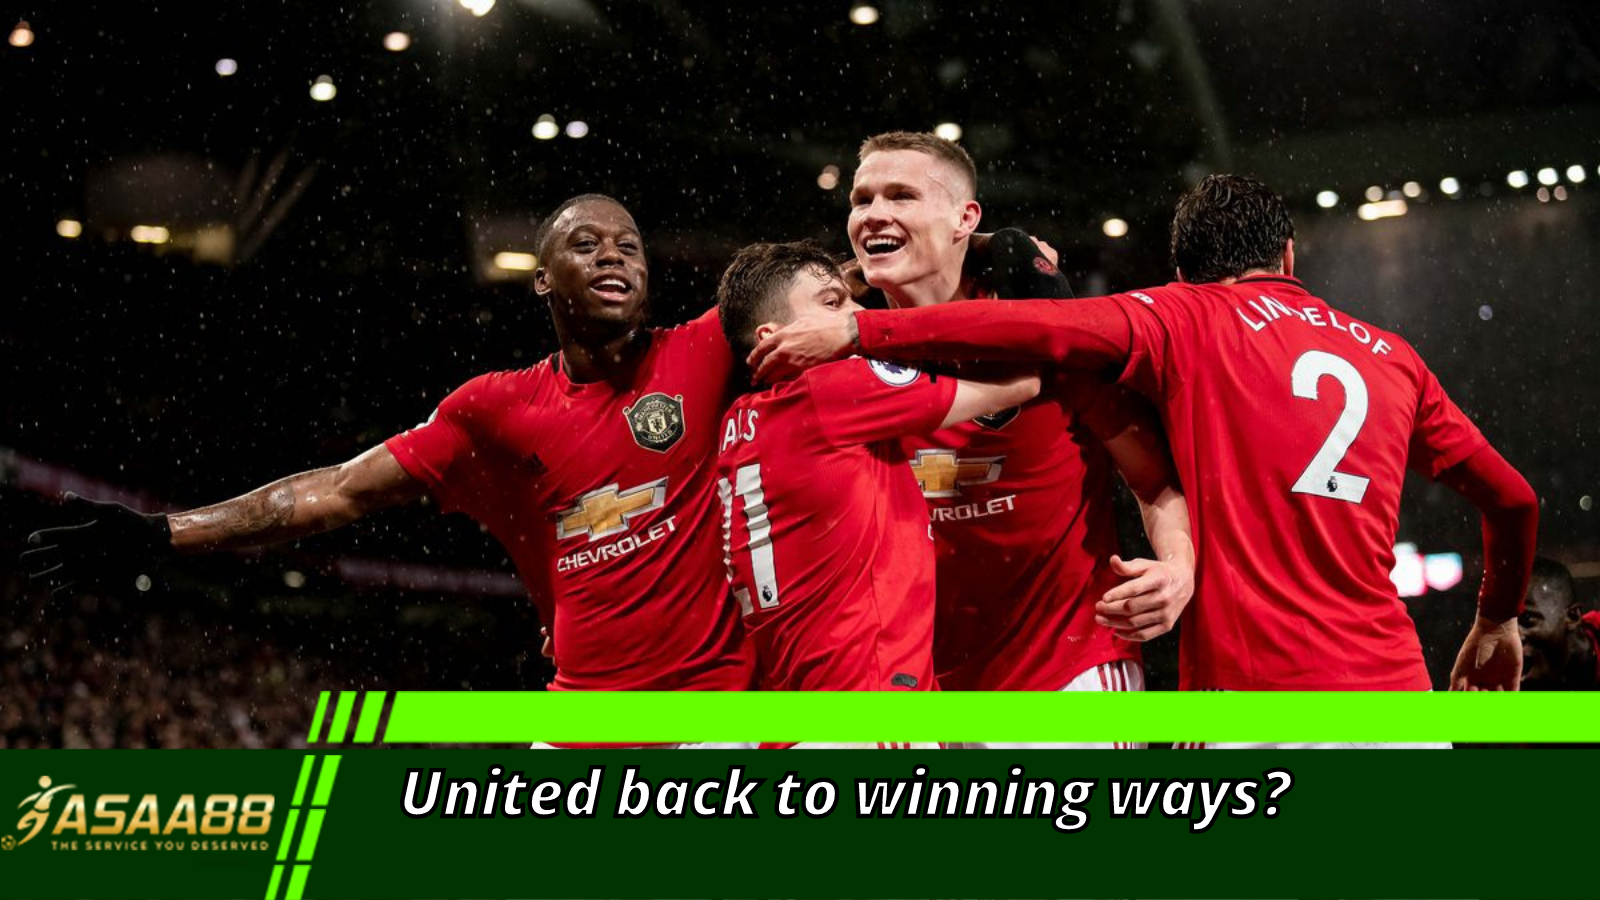 United back to winning ways?